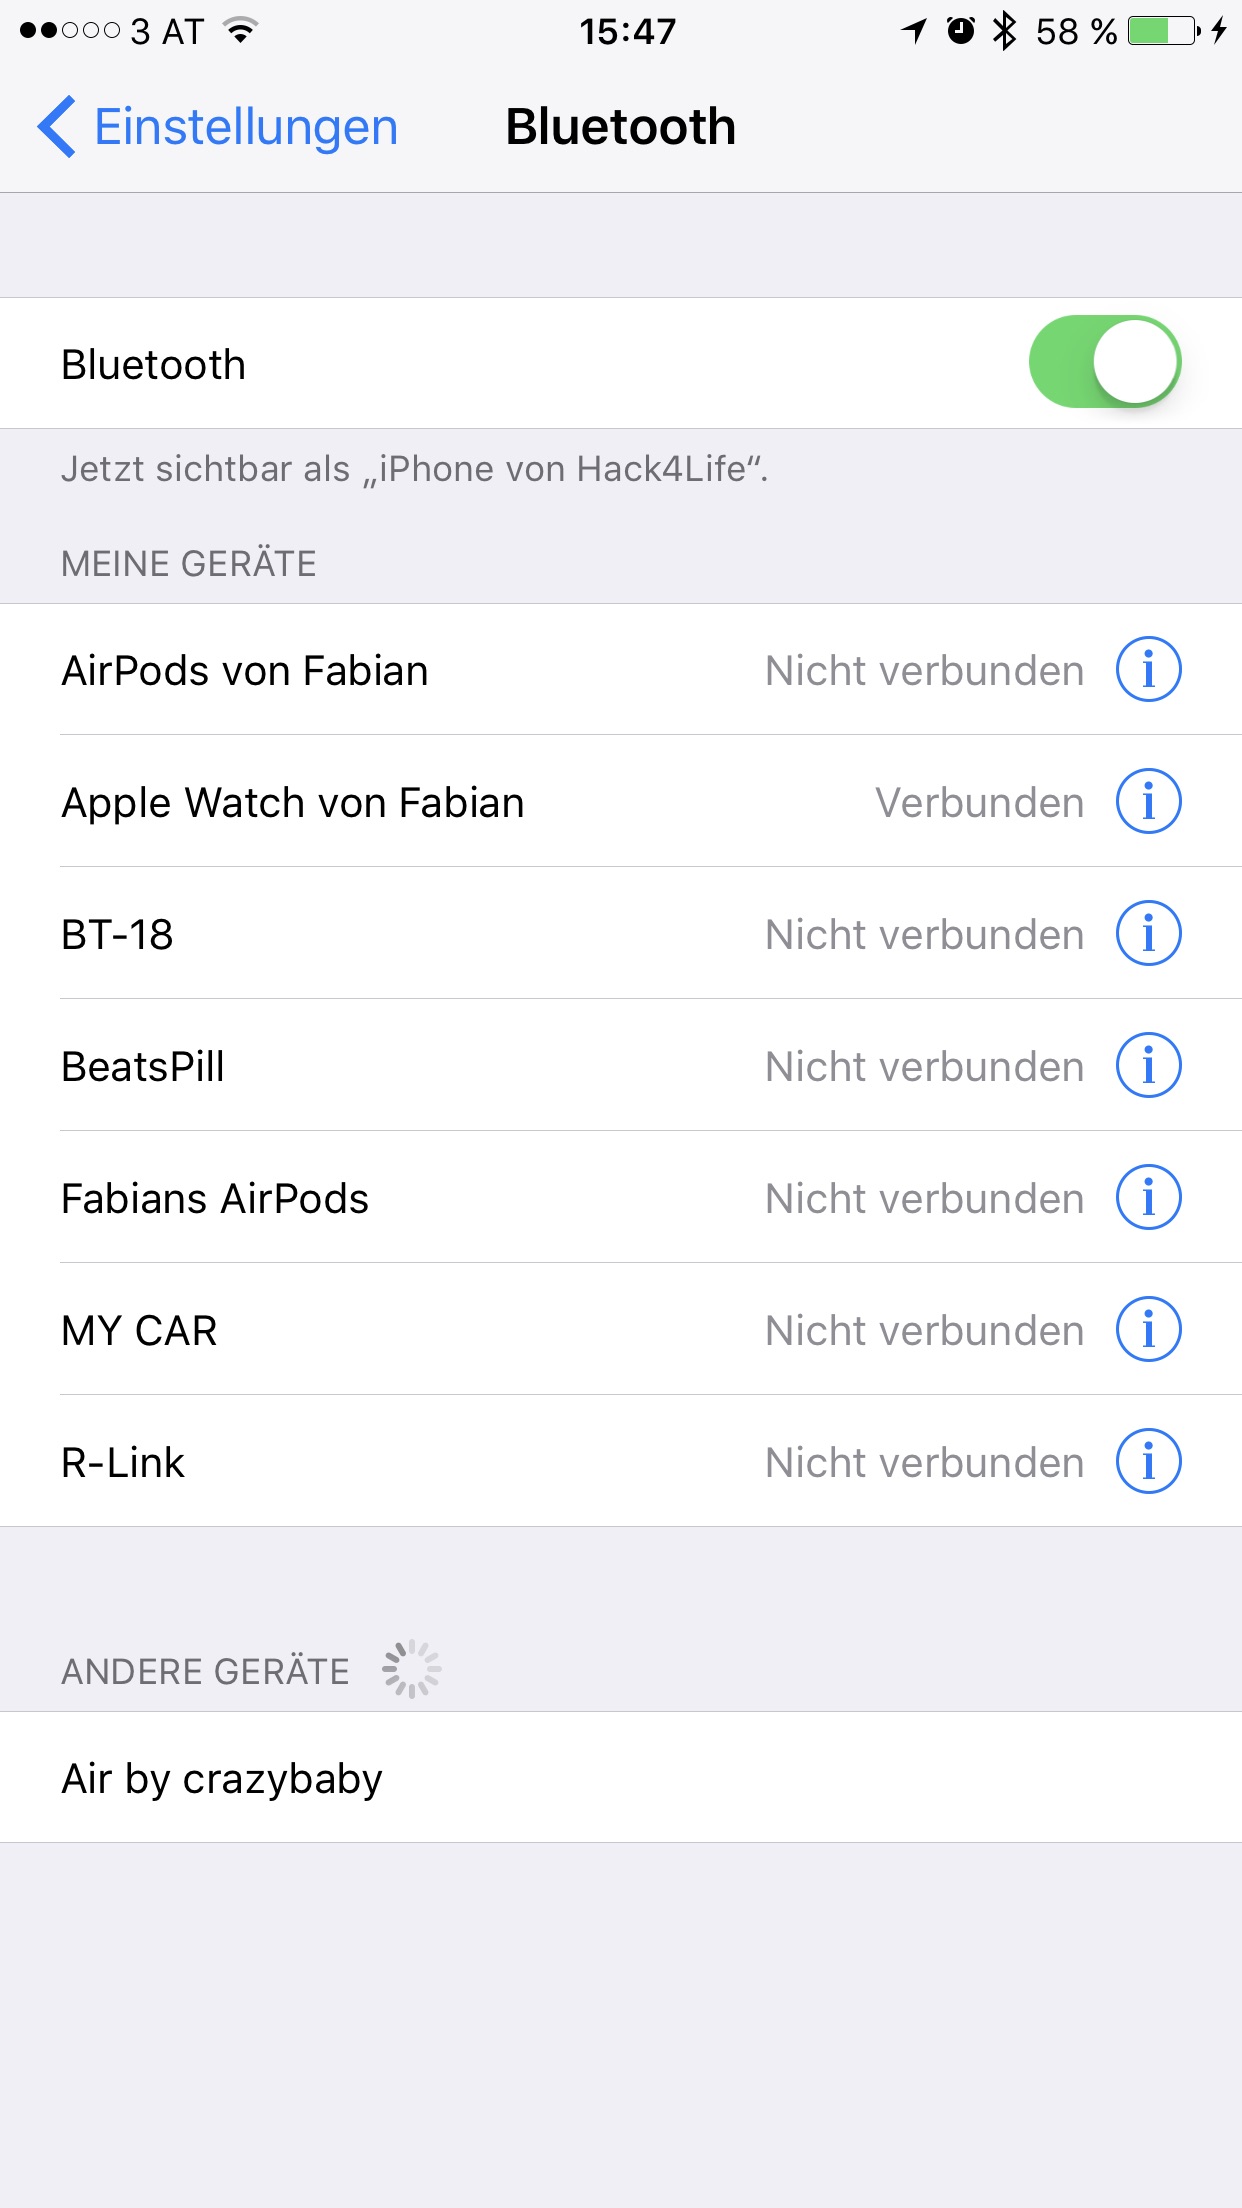 Bluetooth Einstellungen zum Koppel der Air by crazybaby